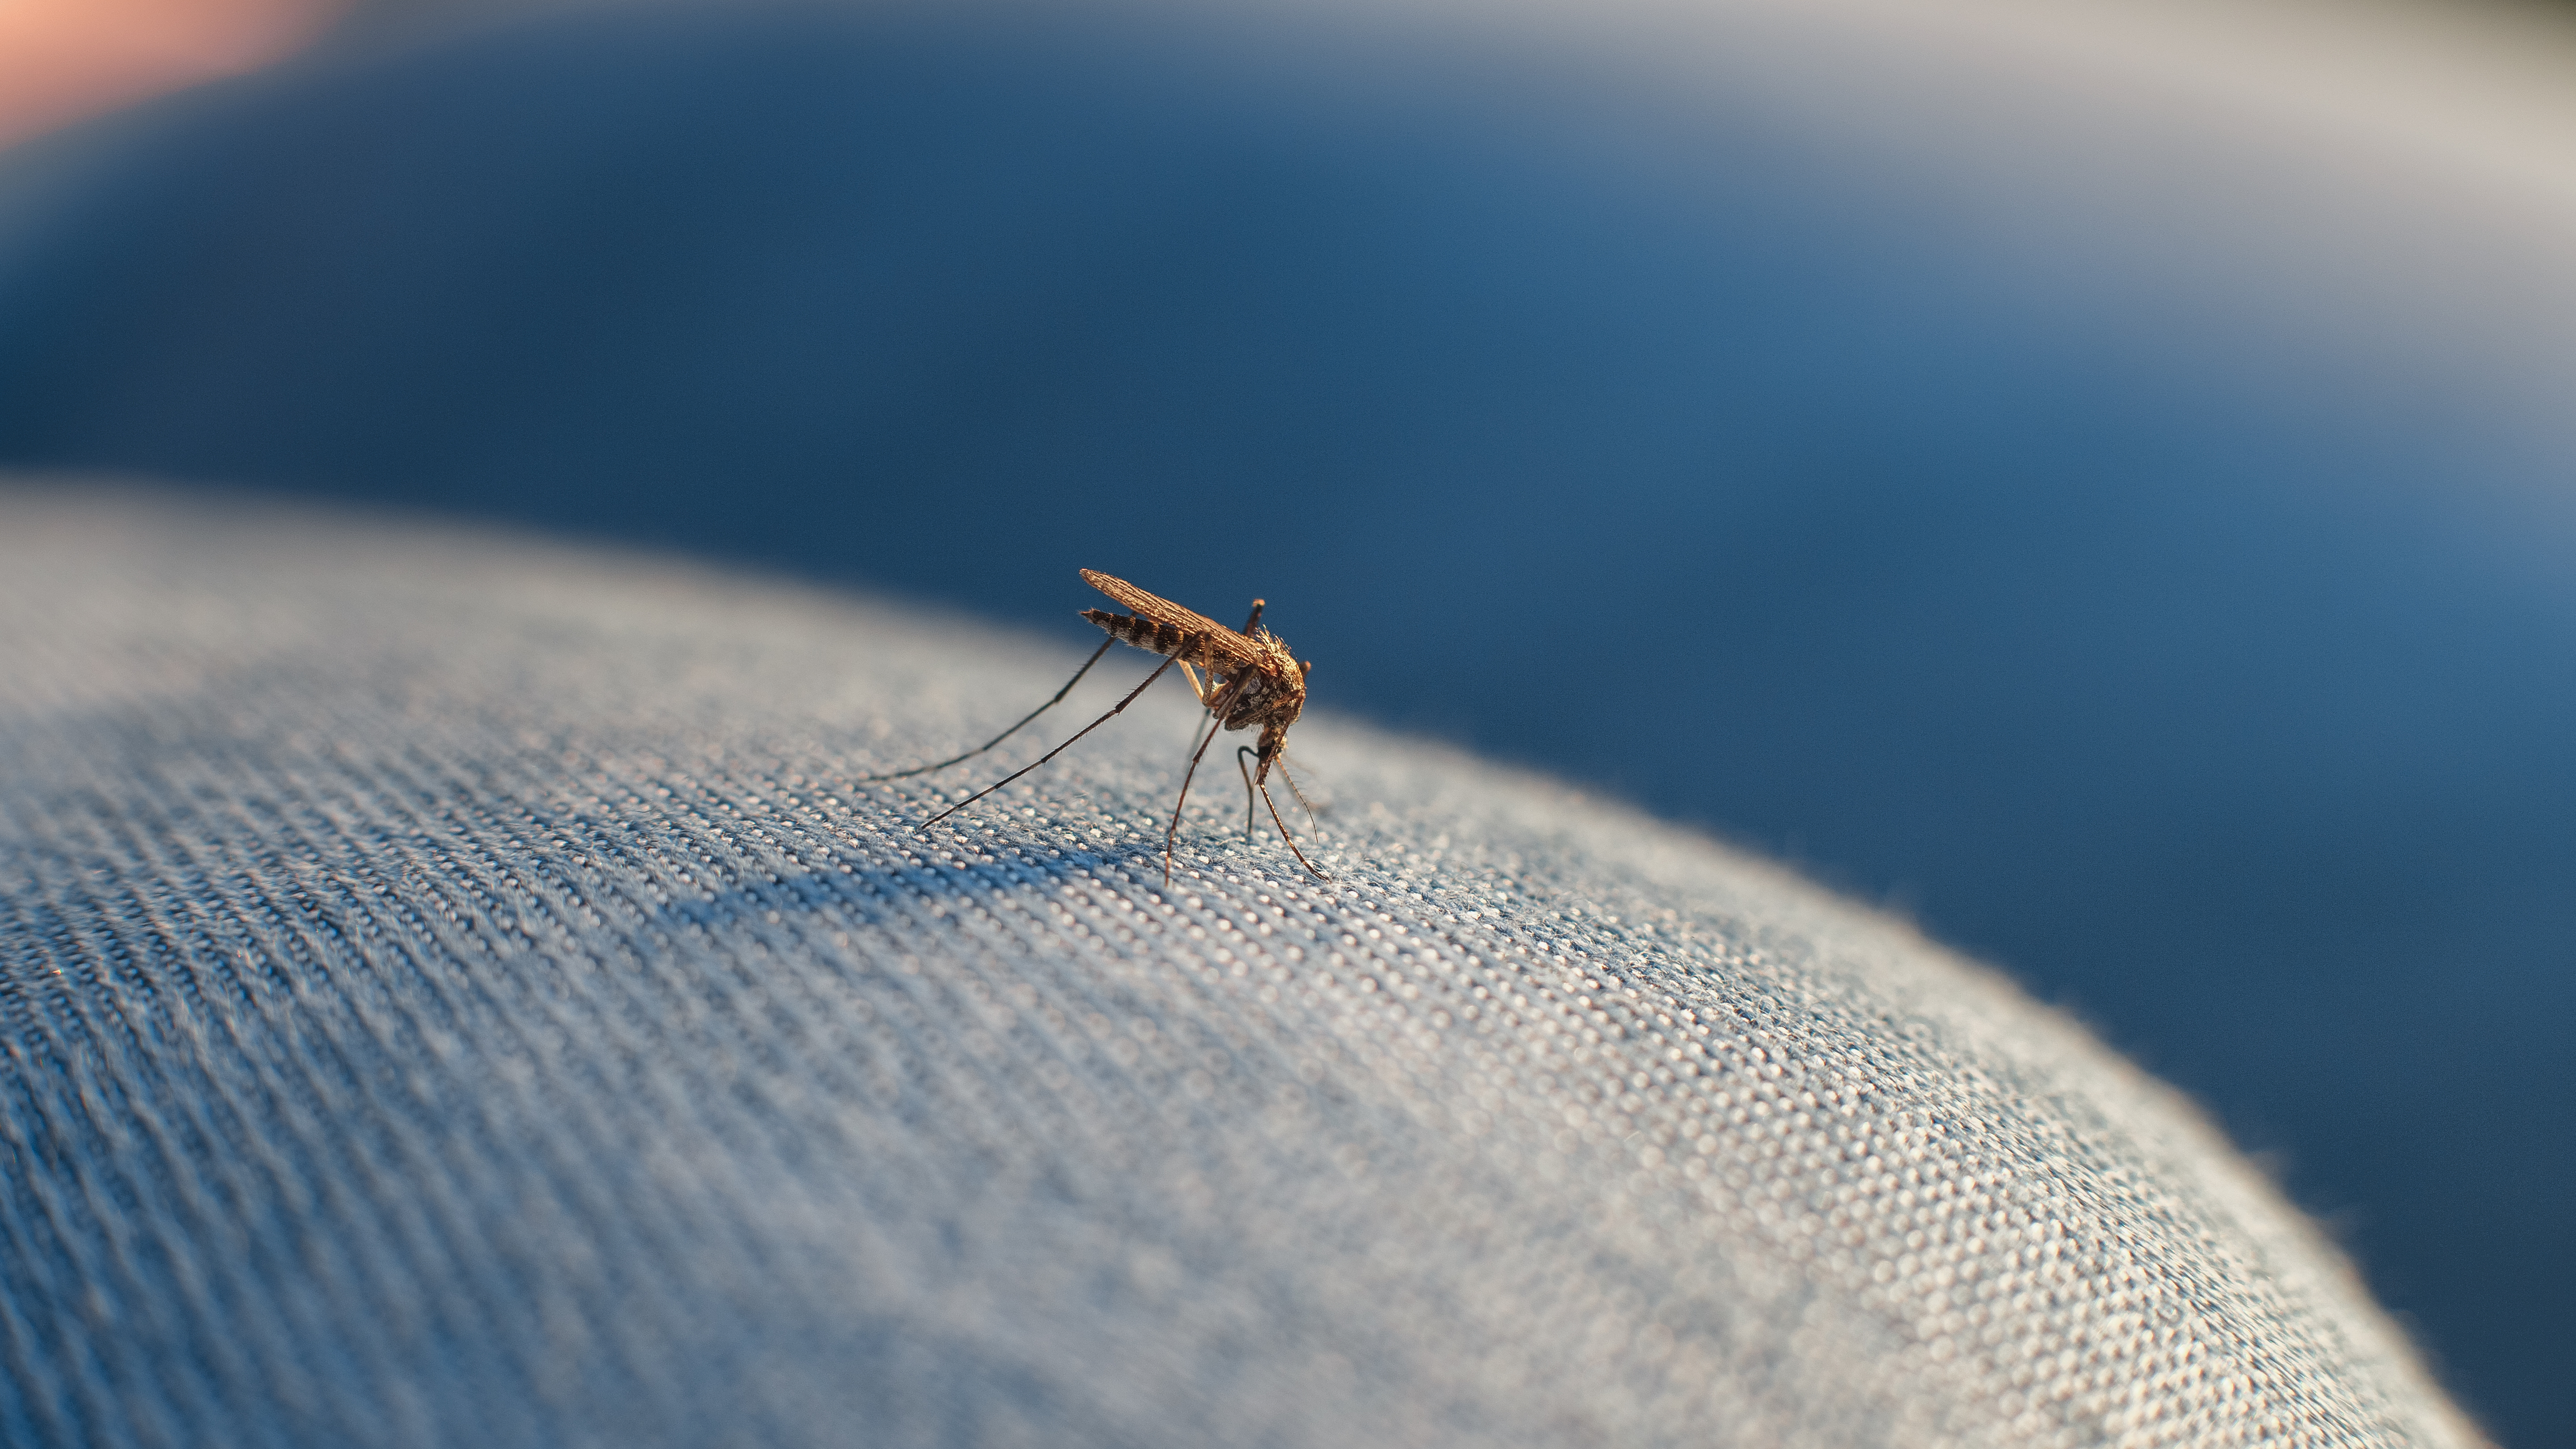 Dobry środek na komary i kleszcze, czyli jaki wybrać?